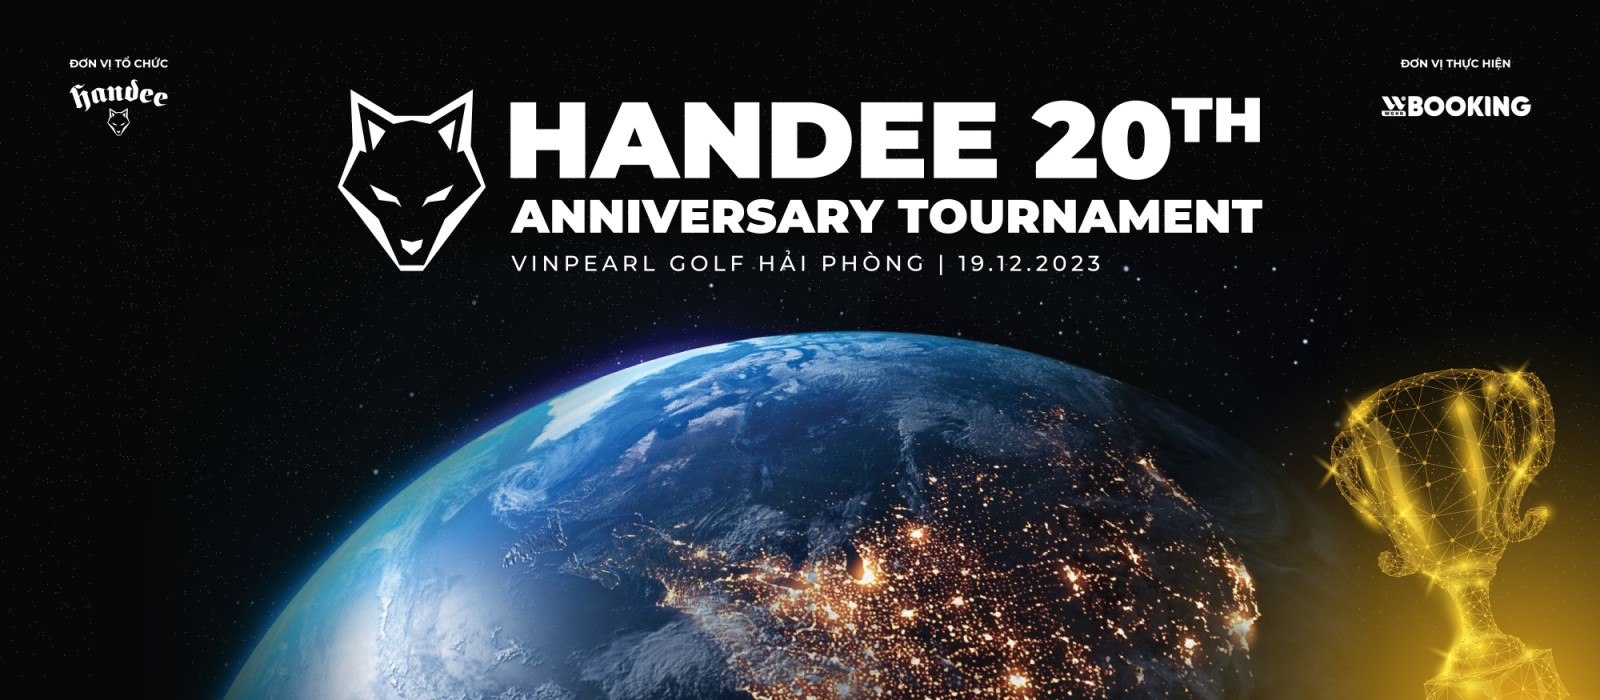 VTV Nói Về Lễ Công Bố Giải Đấu Handee 20th Anniversary Tournament